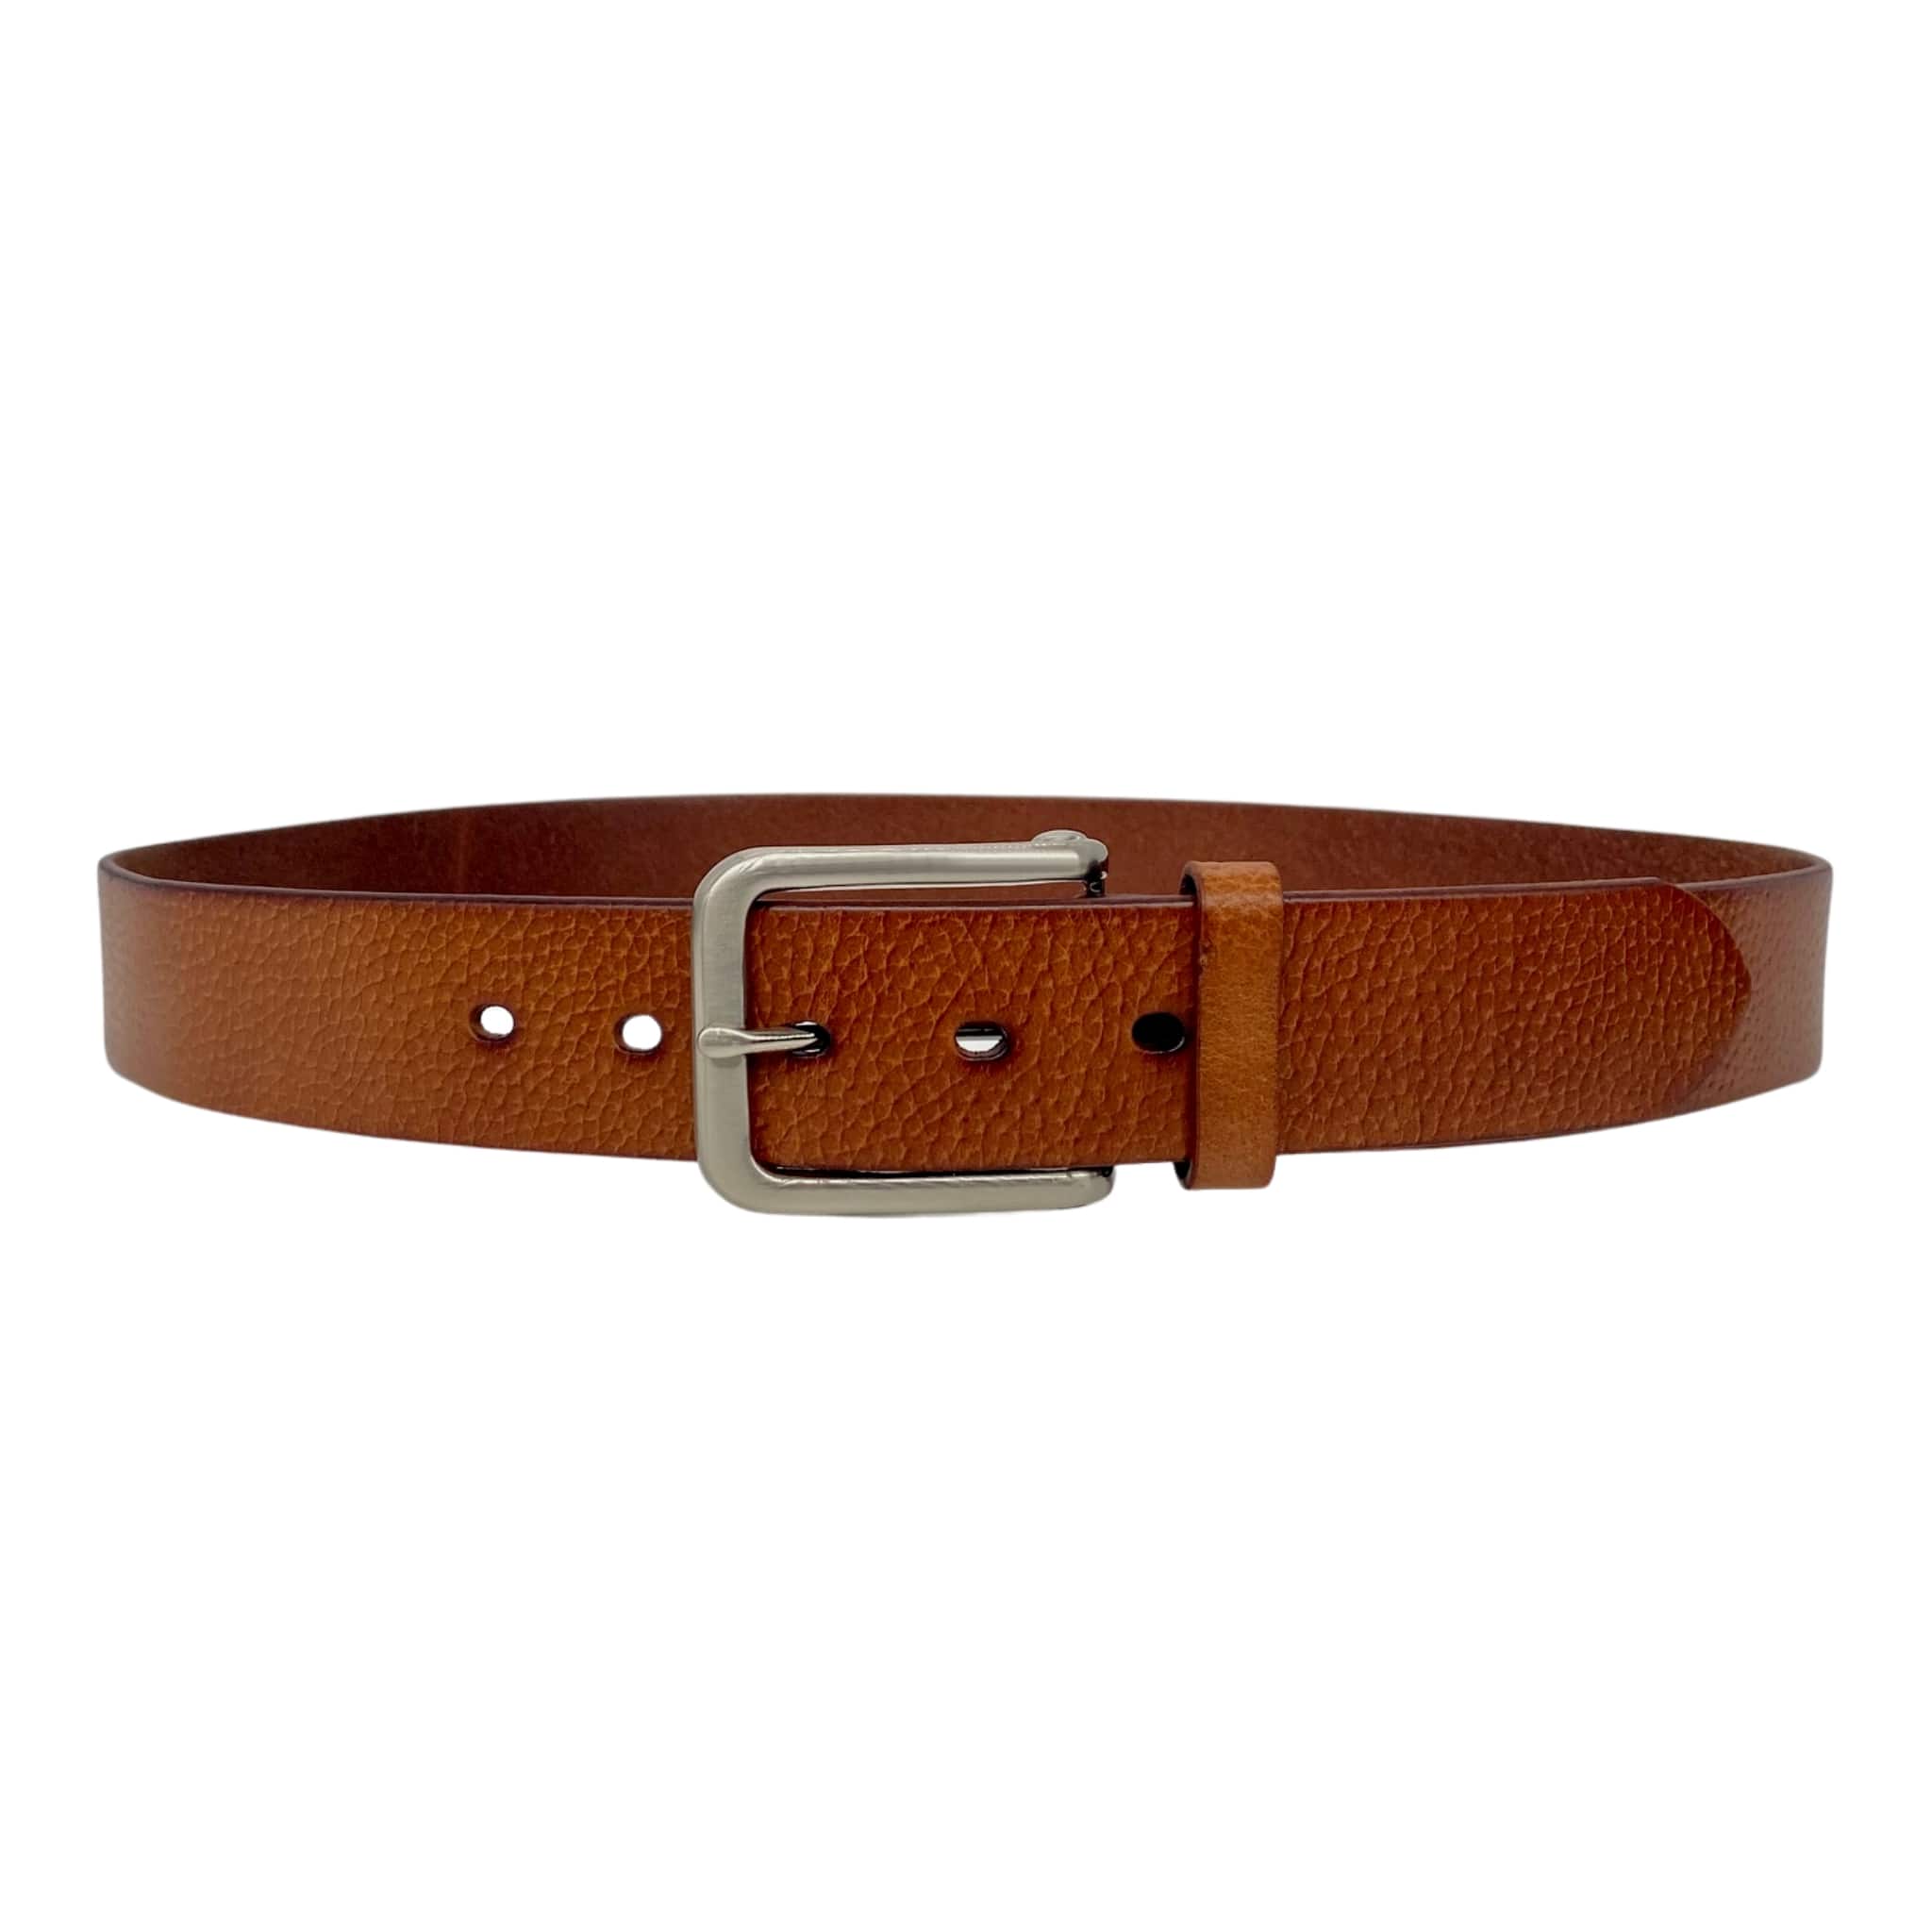 JARROD - Light Tan Belt - Silver Buckle - Genuine Leather | Beltnbags